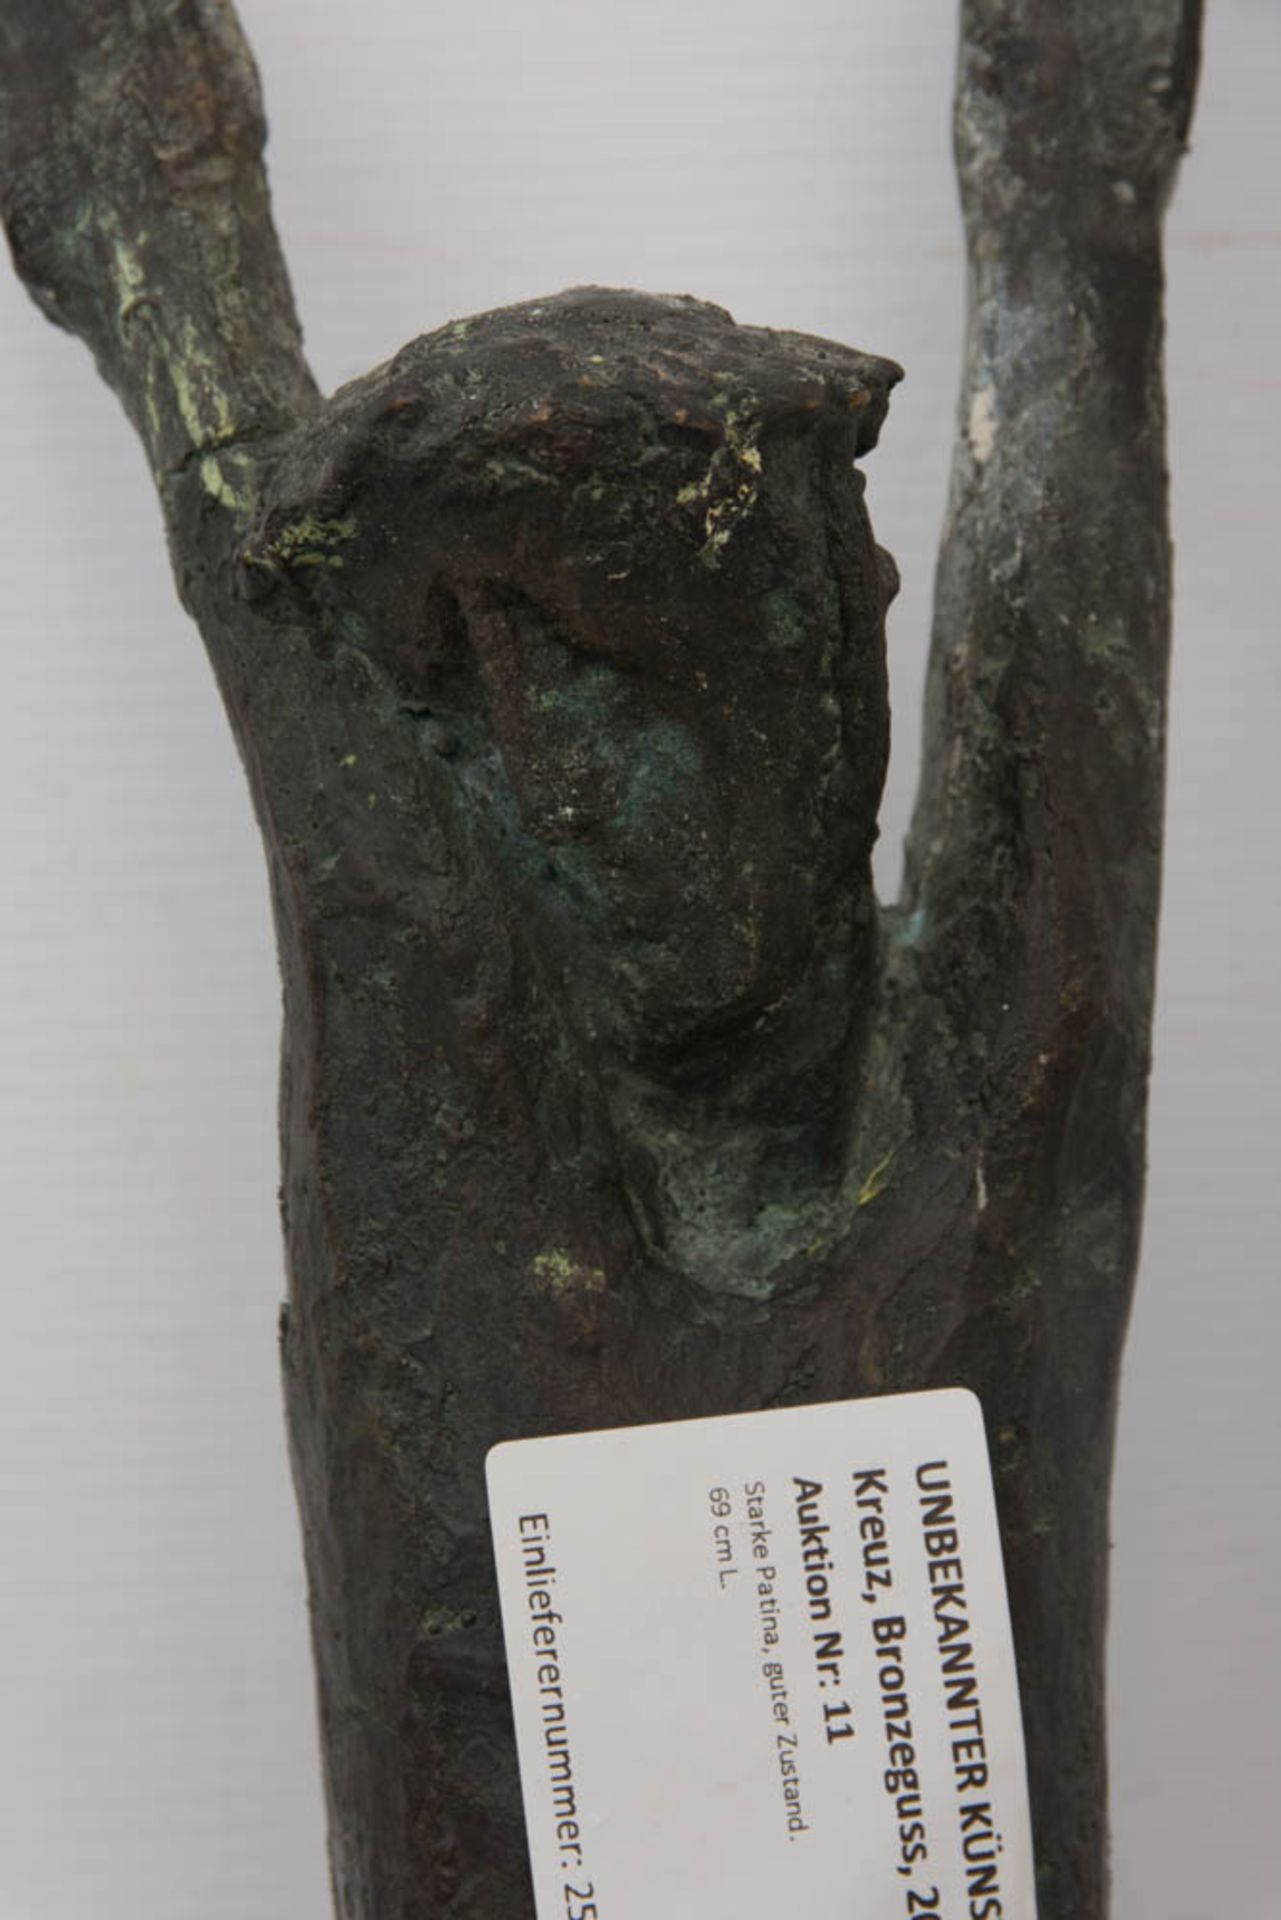 UNBEKANNTER KÜNSTLER, Christus ohne Kreuz, Bronzeguss, 20 Jh.Starke Patina, guter Zustand.69 cm L. - Bild 2 aus 5